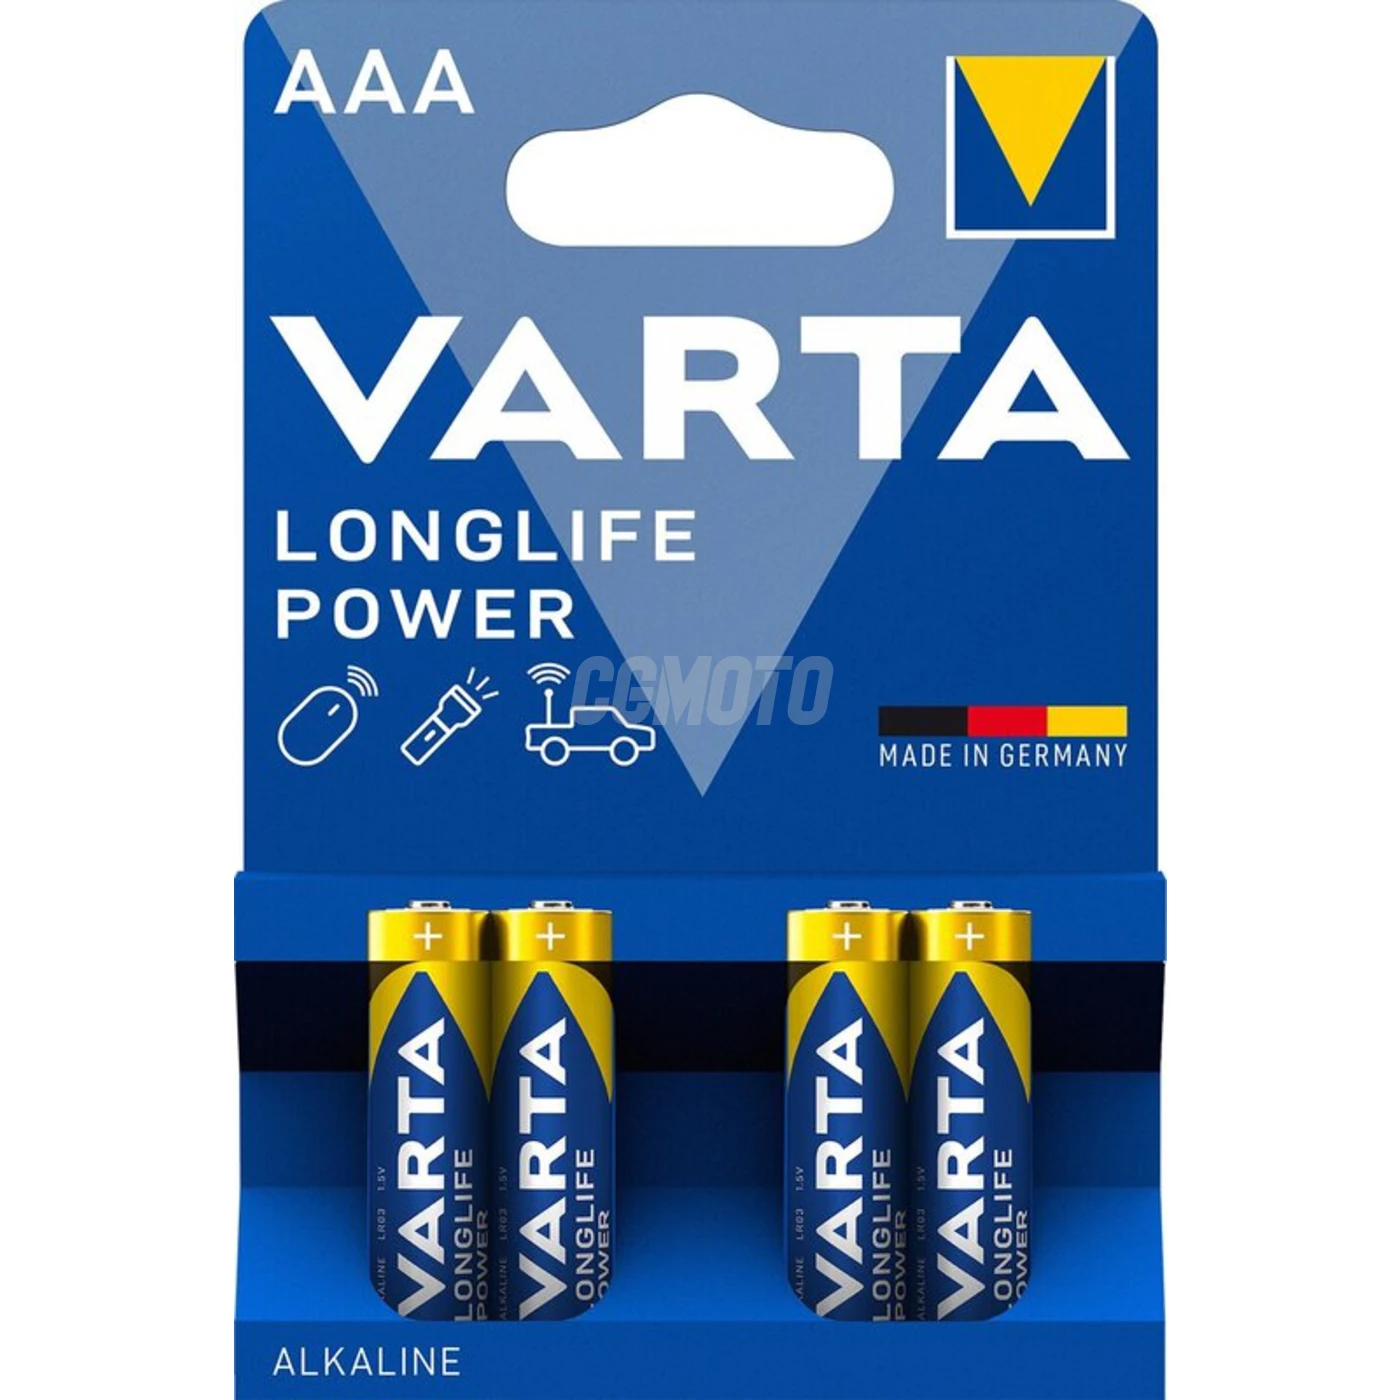 Varta LONGLIFE Power MINI STILO/AAA x 4 pile